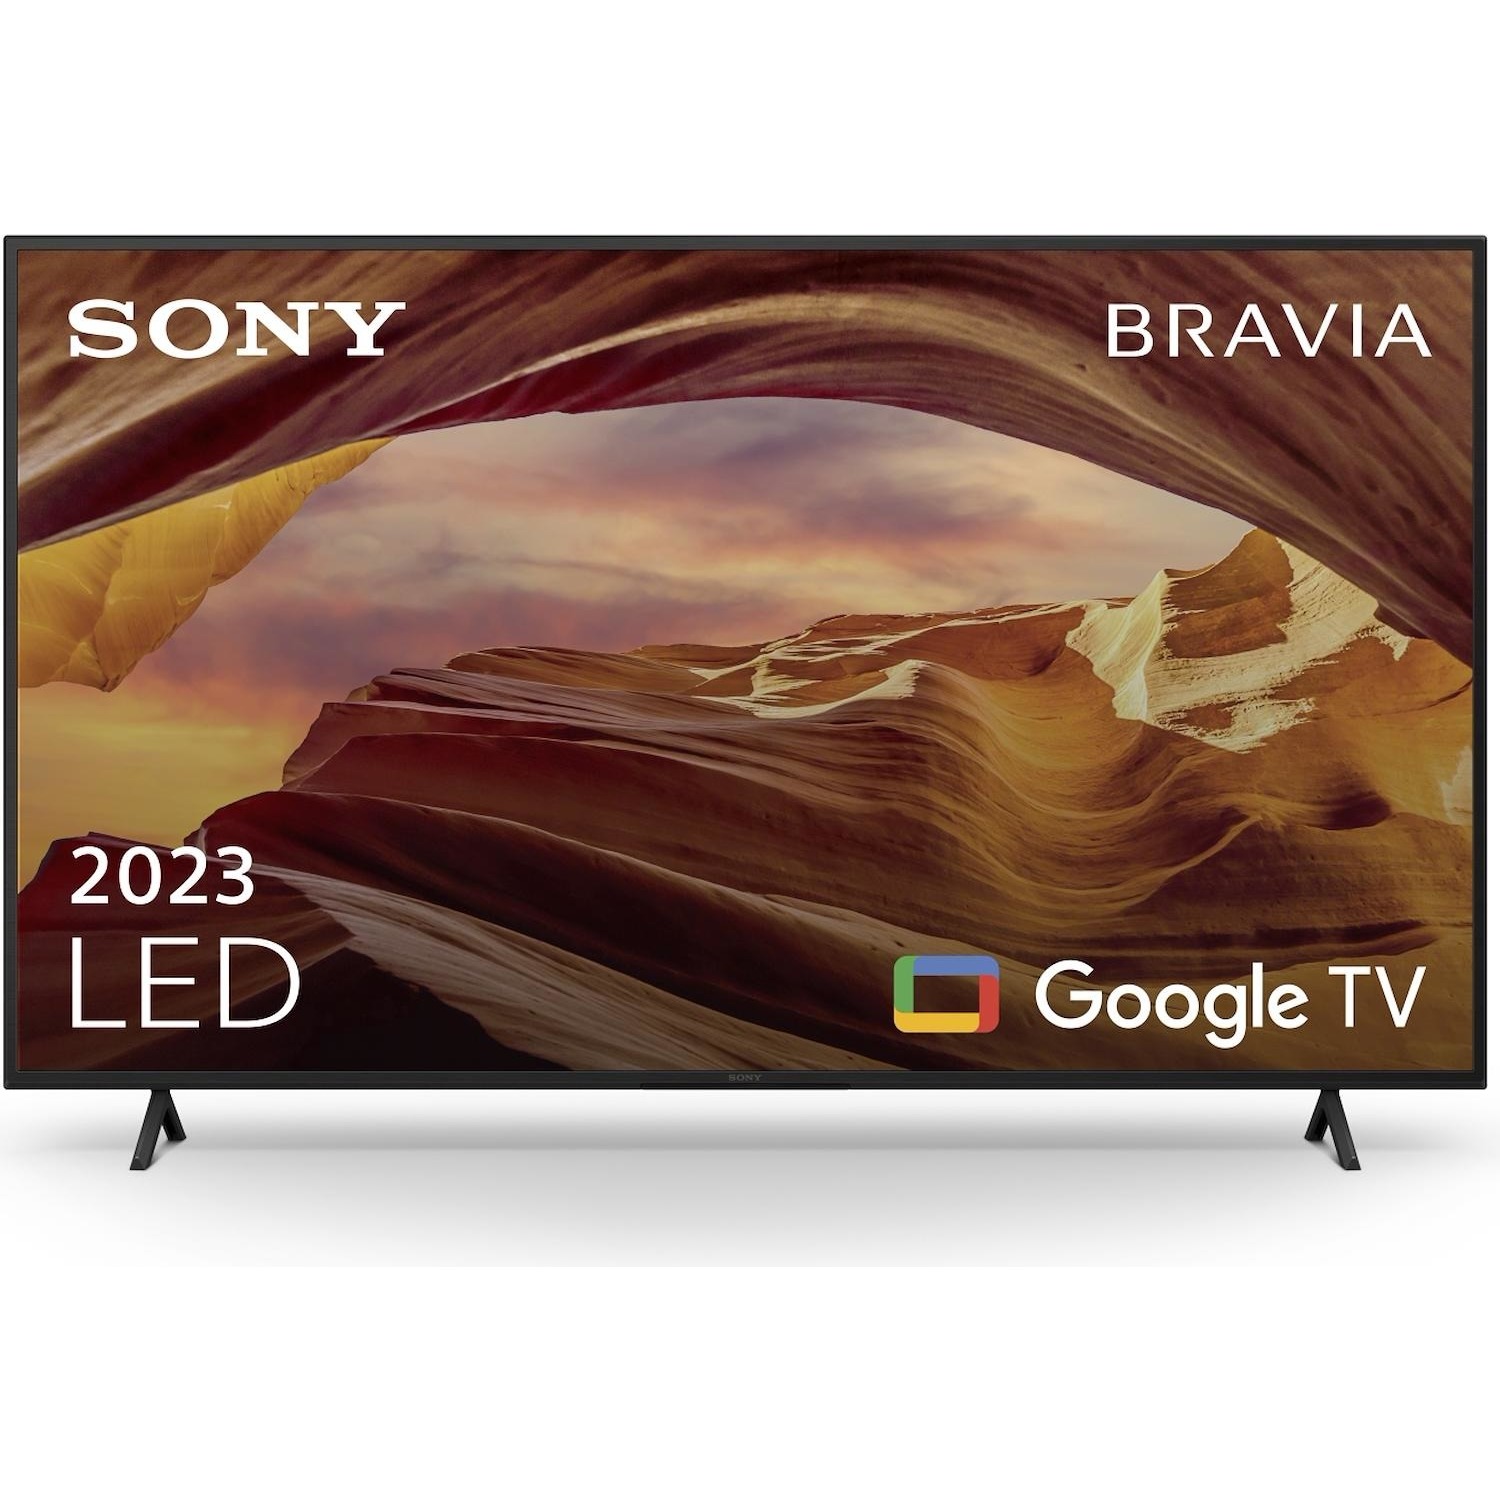 Immagine per TV LED Smart 4K UHD Sony 55X75W da DIMOStore